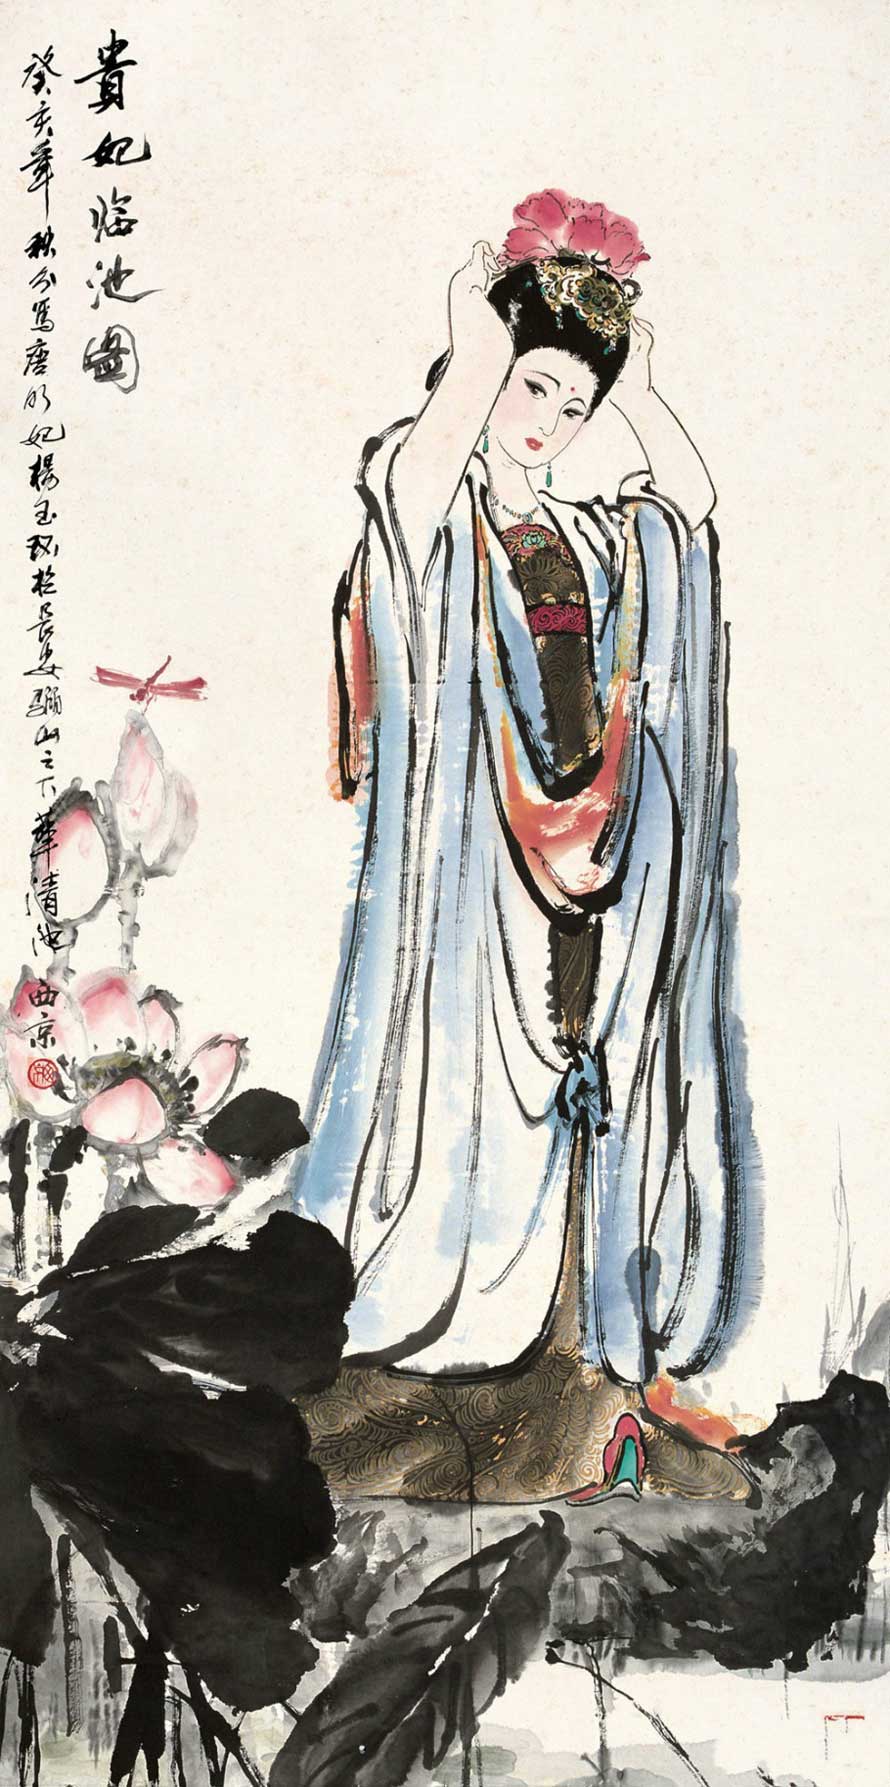 王西京写意人物画作品欣赏(图19)